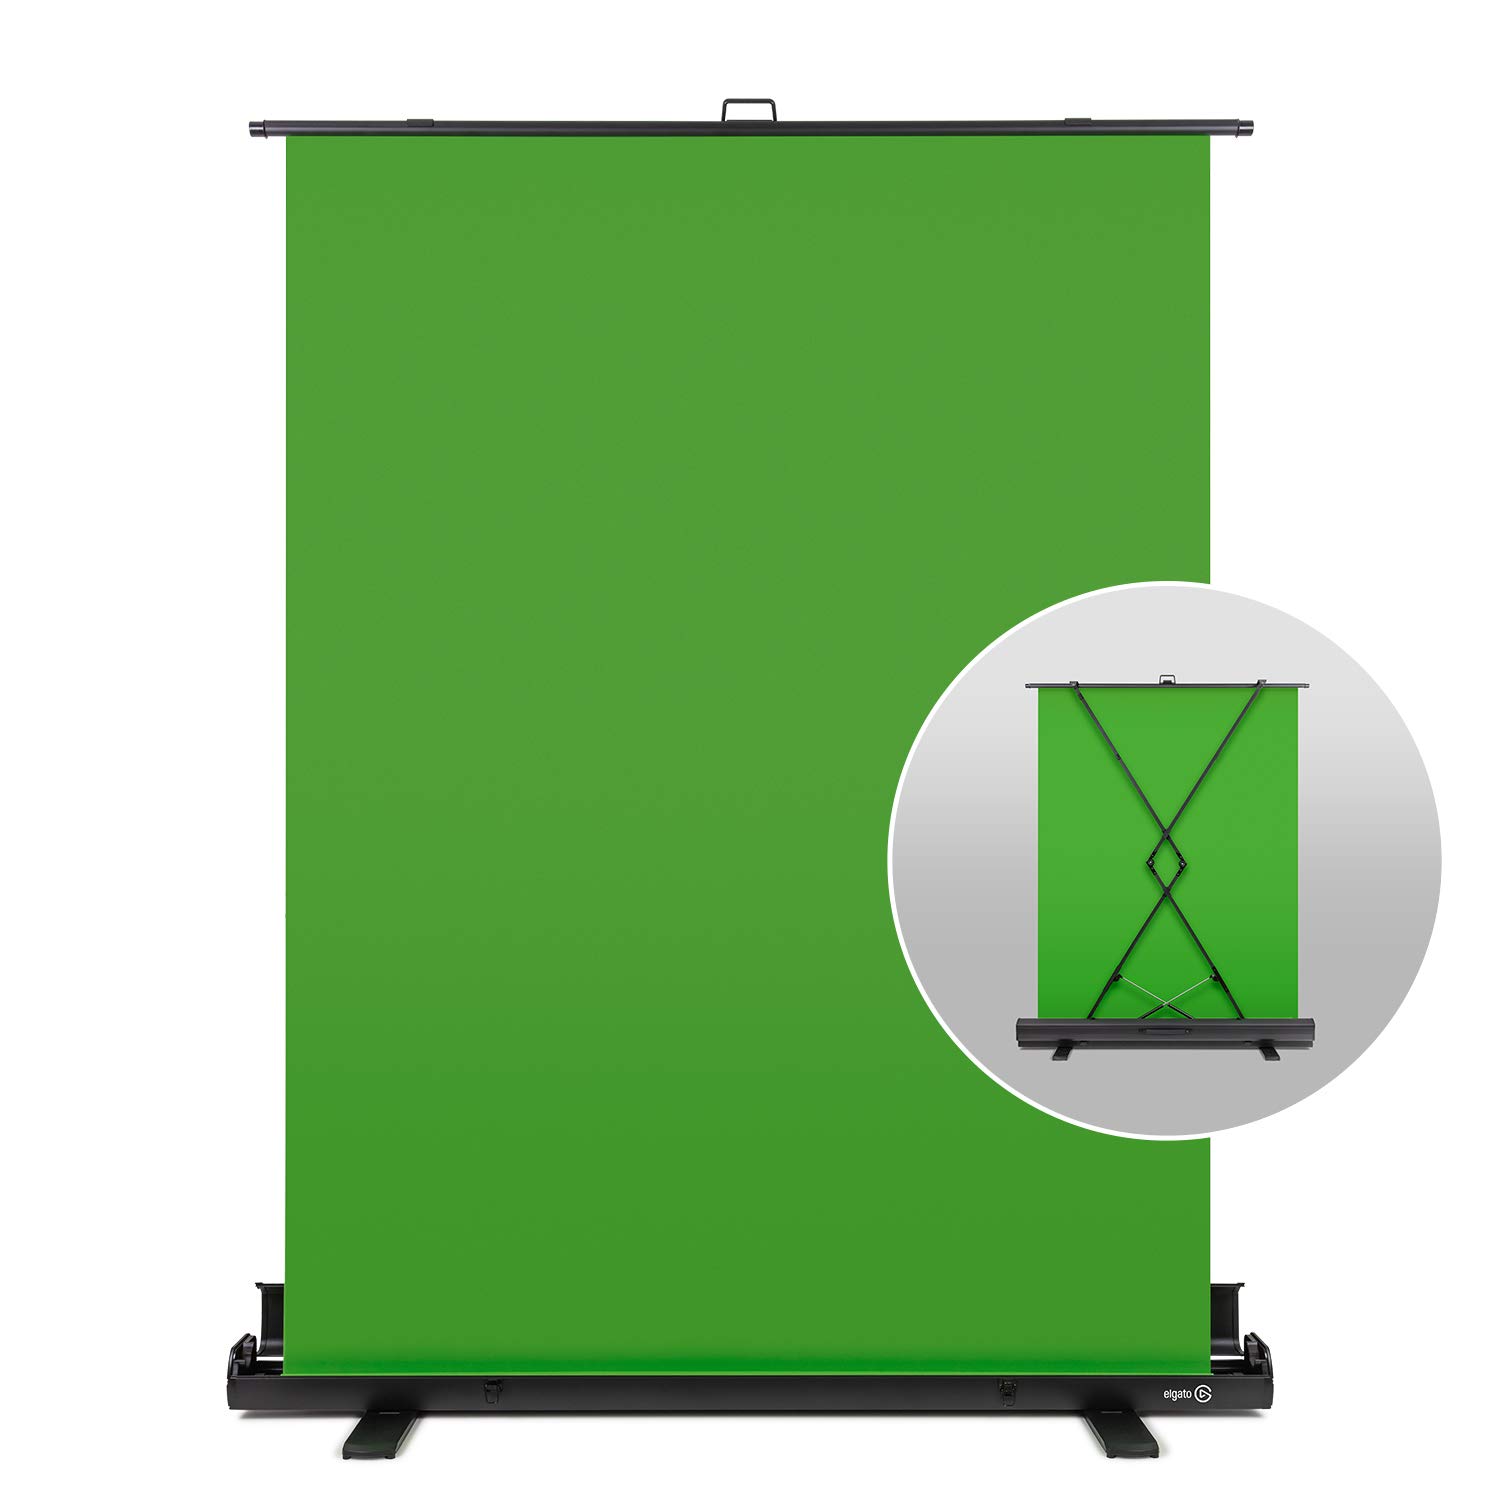 Elgato Green Screen là giải pháp hoàn hảo để bạn tạo ra những bức ảnh và video chuyên nghiệp với phong cách riêng của mình. Với khả năng làm mờ nền với màu xanh lá cây đặc trưng, sản phẩm sẽ giúp bạn tạo ra những bức ảnh và video ấn tượng hơn bao giờ hết. Để biết thêm chi tiết, hãy xem ngay hình ảnh liên quan đến Elgato Green Screen!